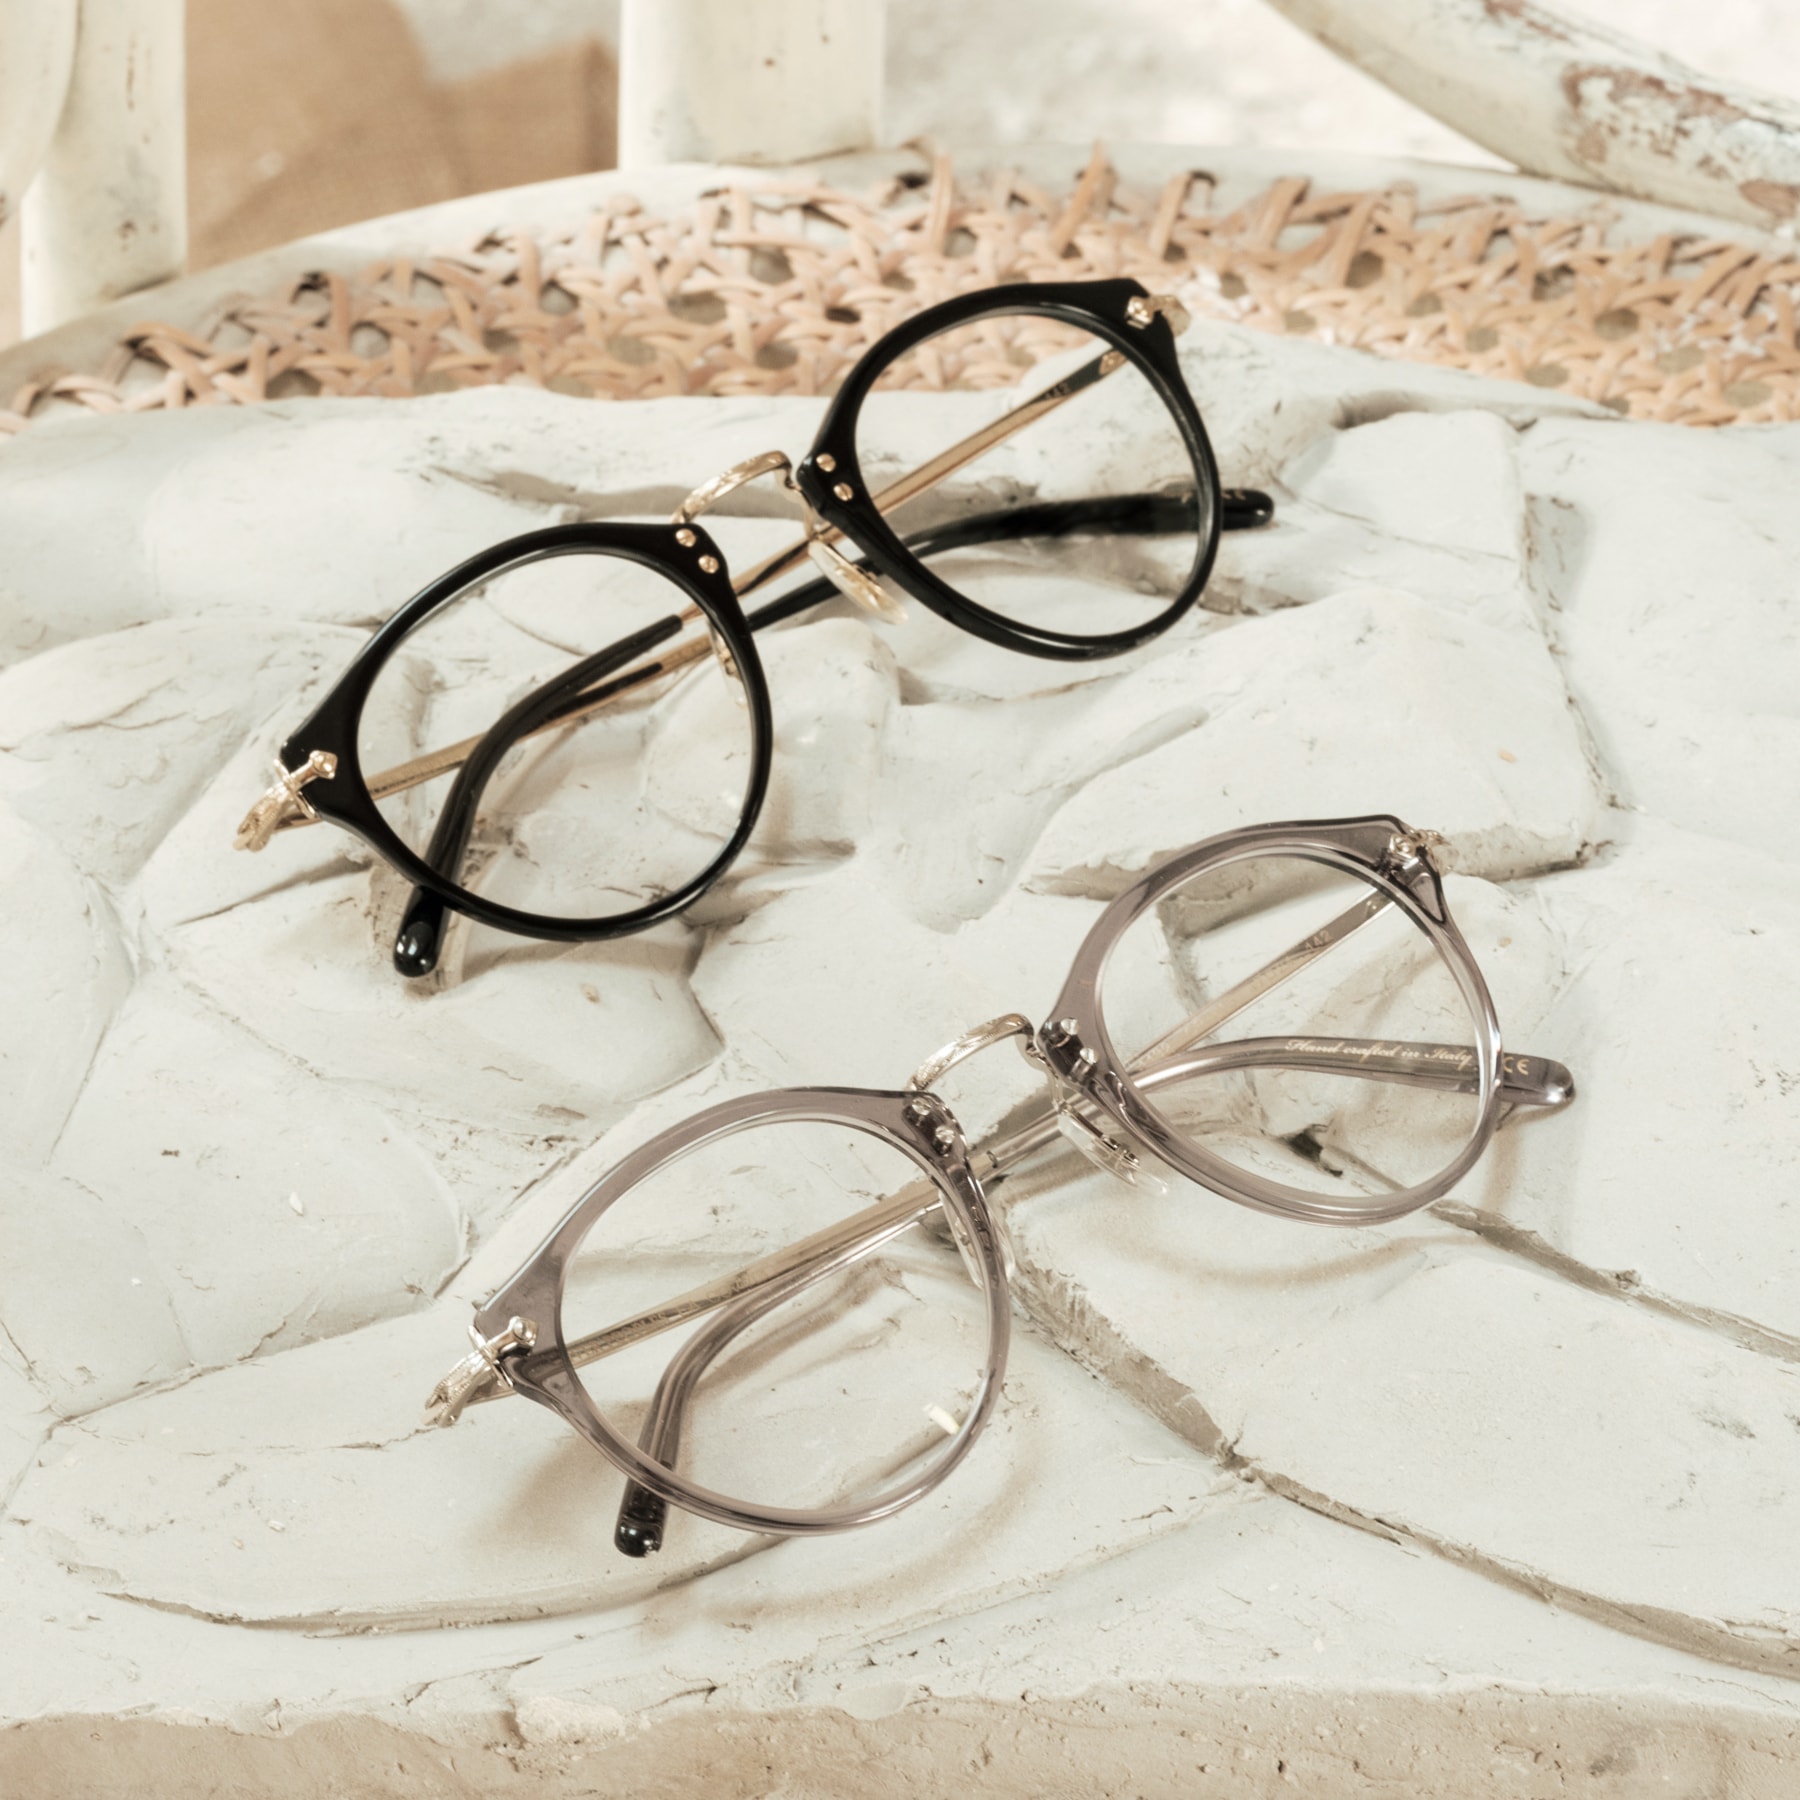 OV5184 Eyeglasses Semi-Matte Cocobolo-Antique Gold | Oliver 